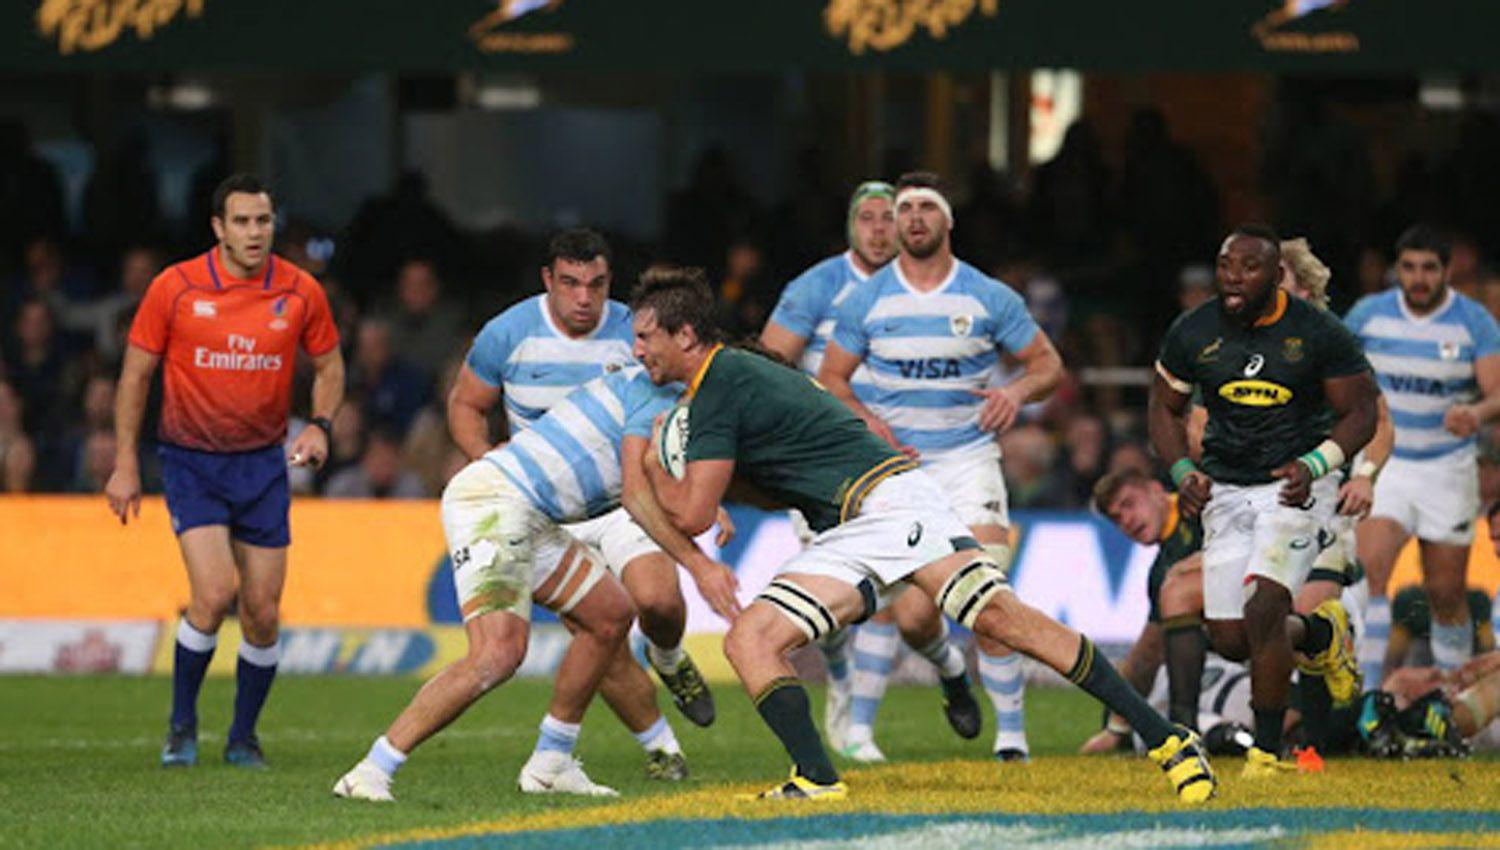 Dura derrota de Los Pumas ante Sudaacutefrica en el Rugby Championship